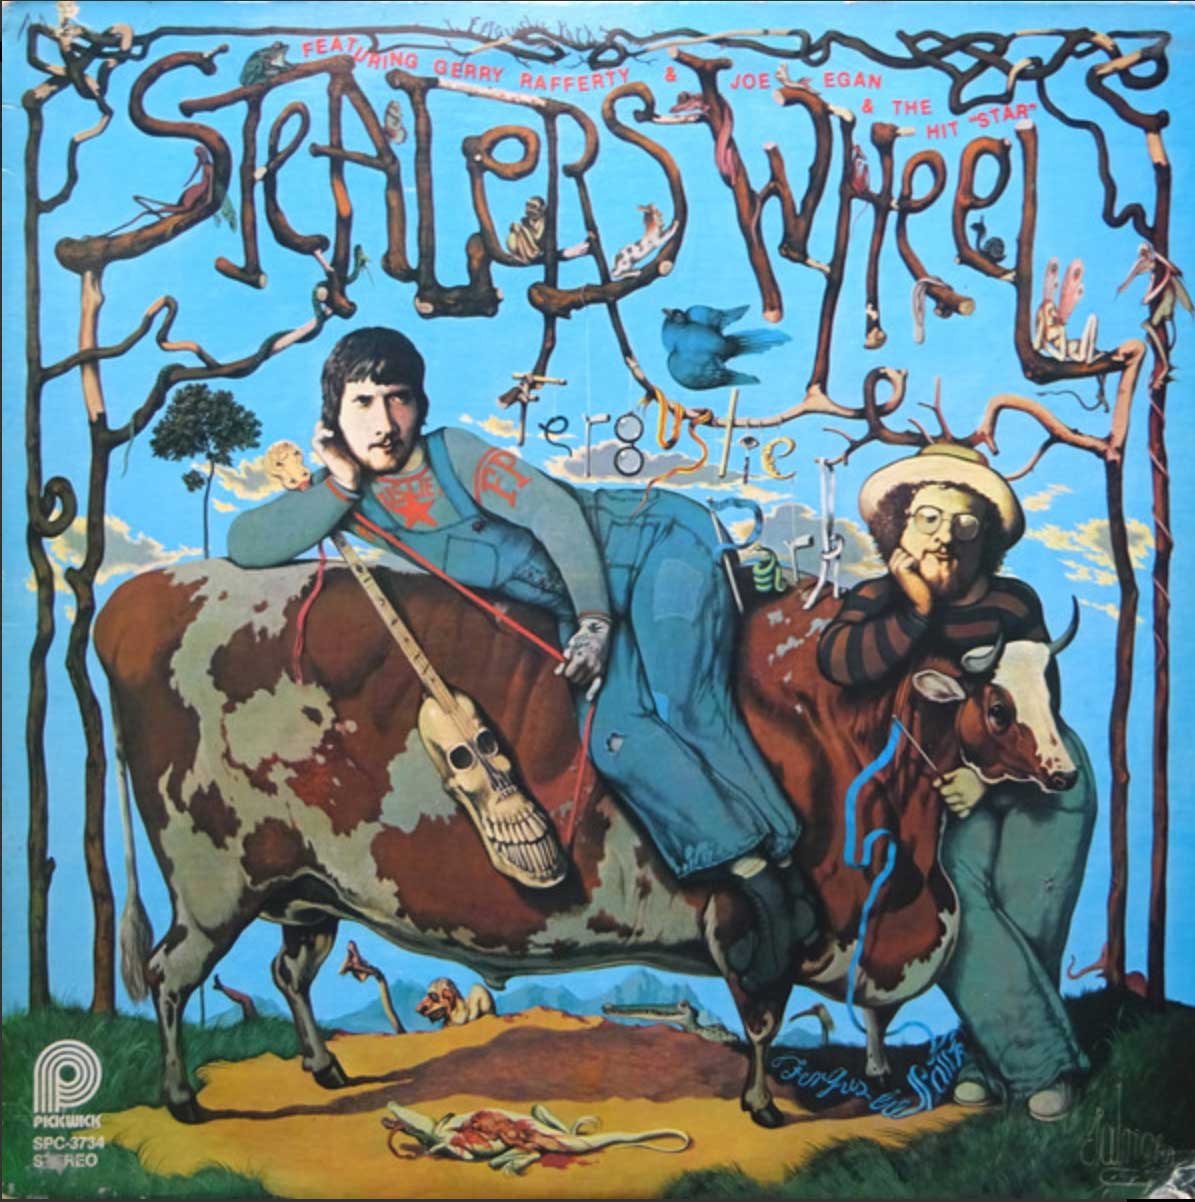 Stealers Wheel ‎– Ferguslie Park